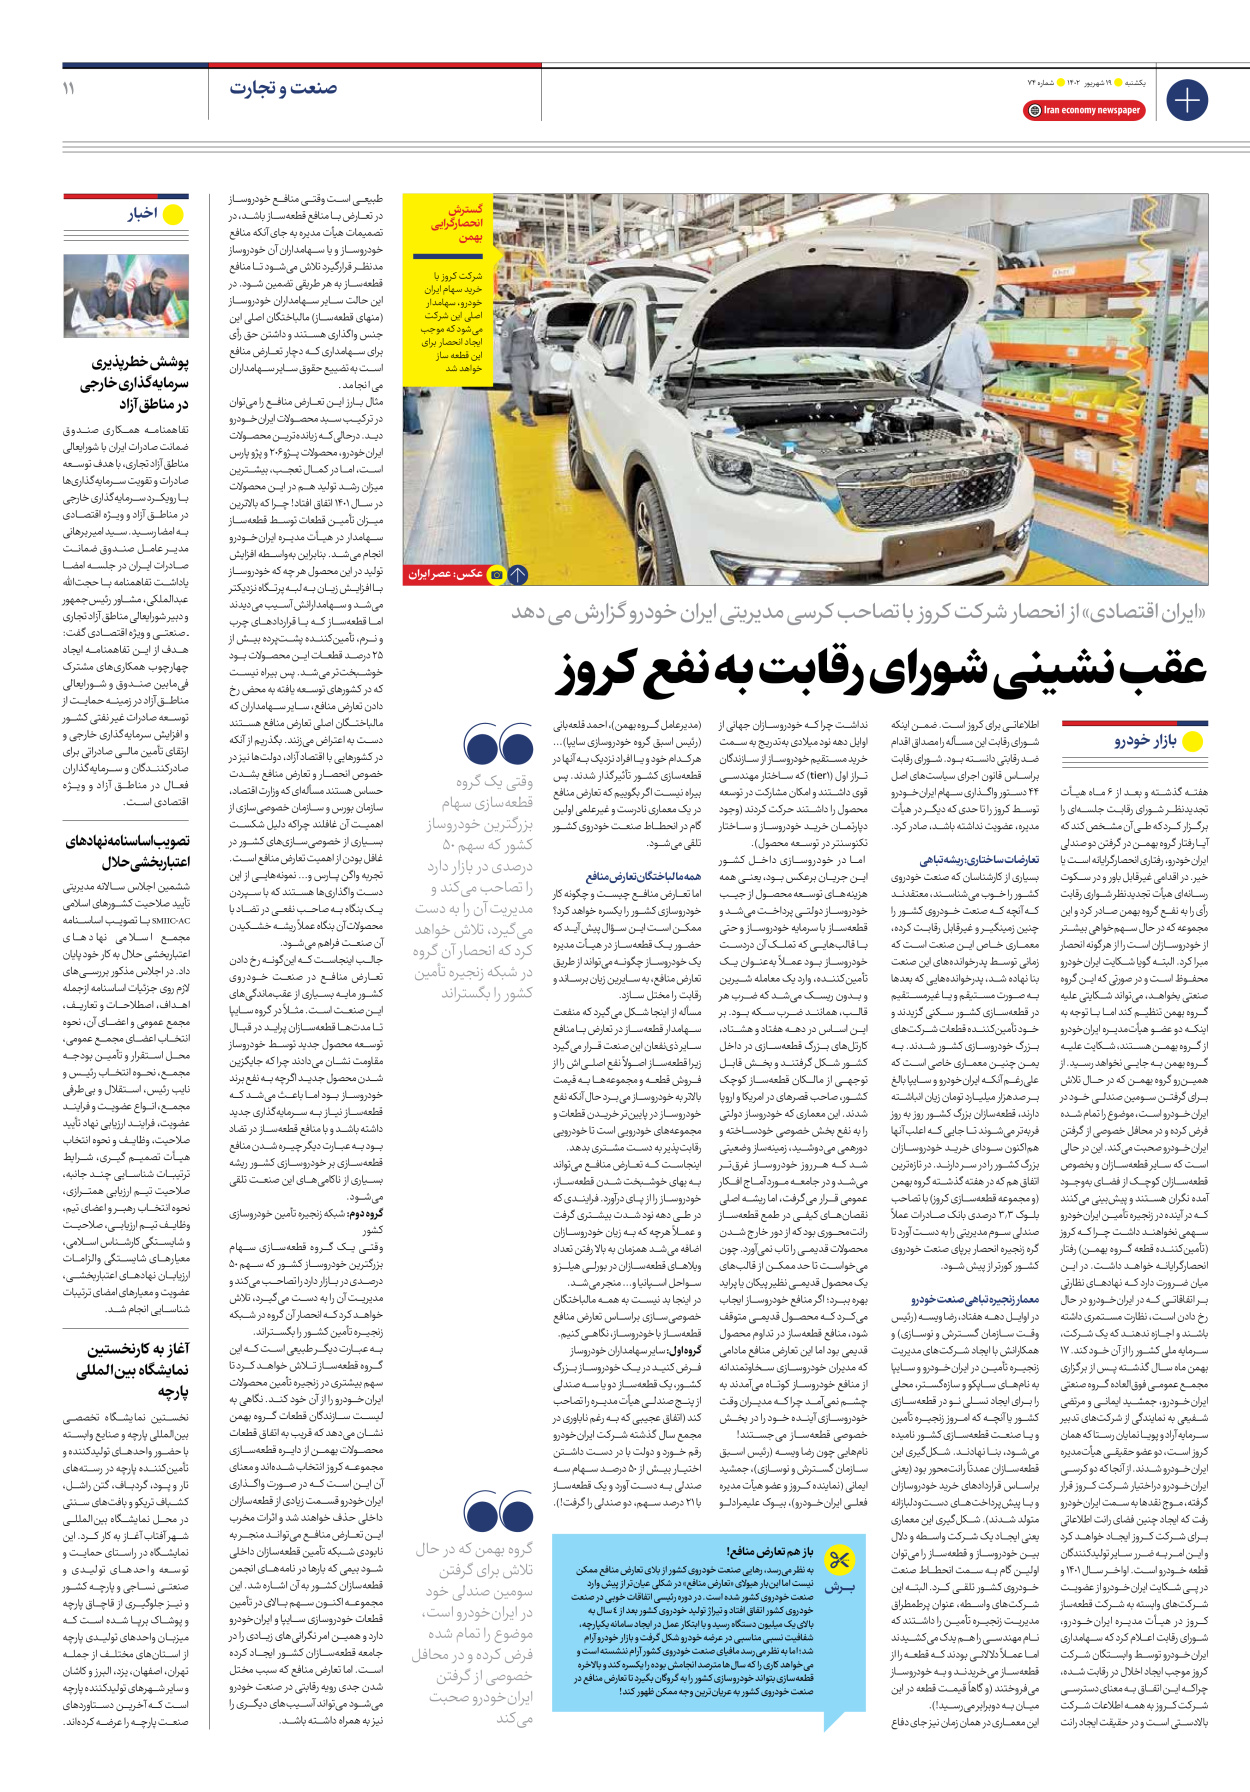 روزنامه ایران اقتصادی - شماره هفتاد و چهار - ۱۹ شهریور ۱۴۰۲ - صفحه ۱۱